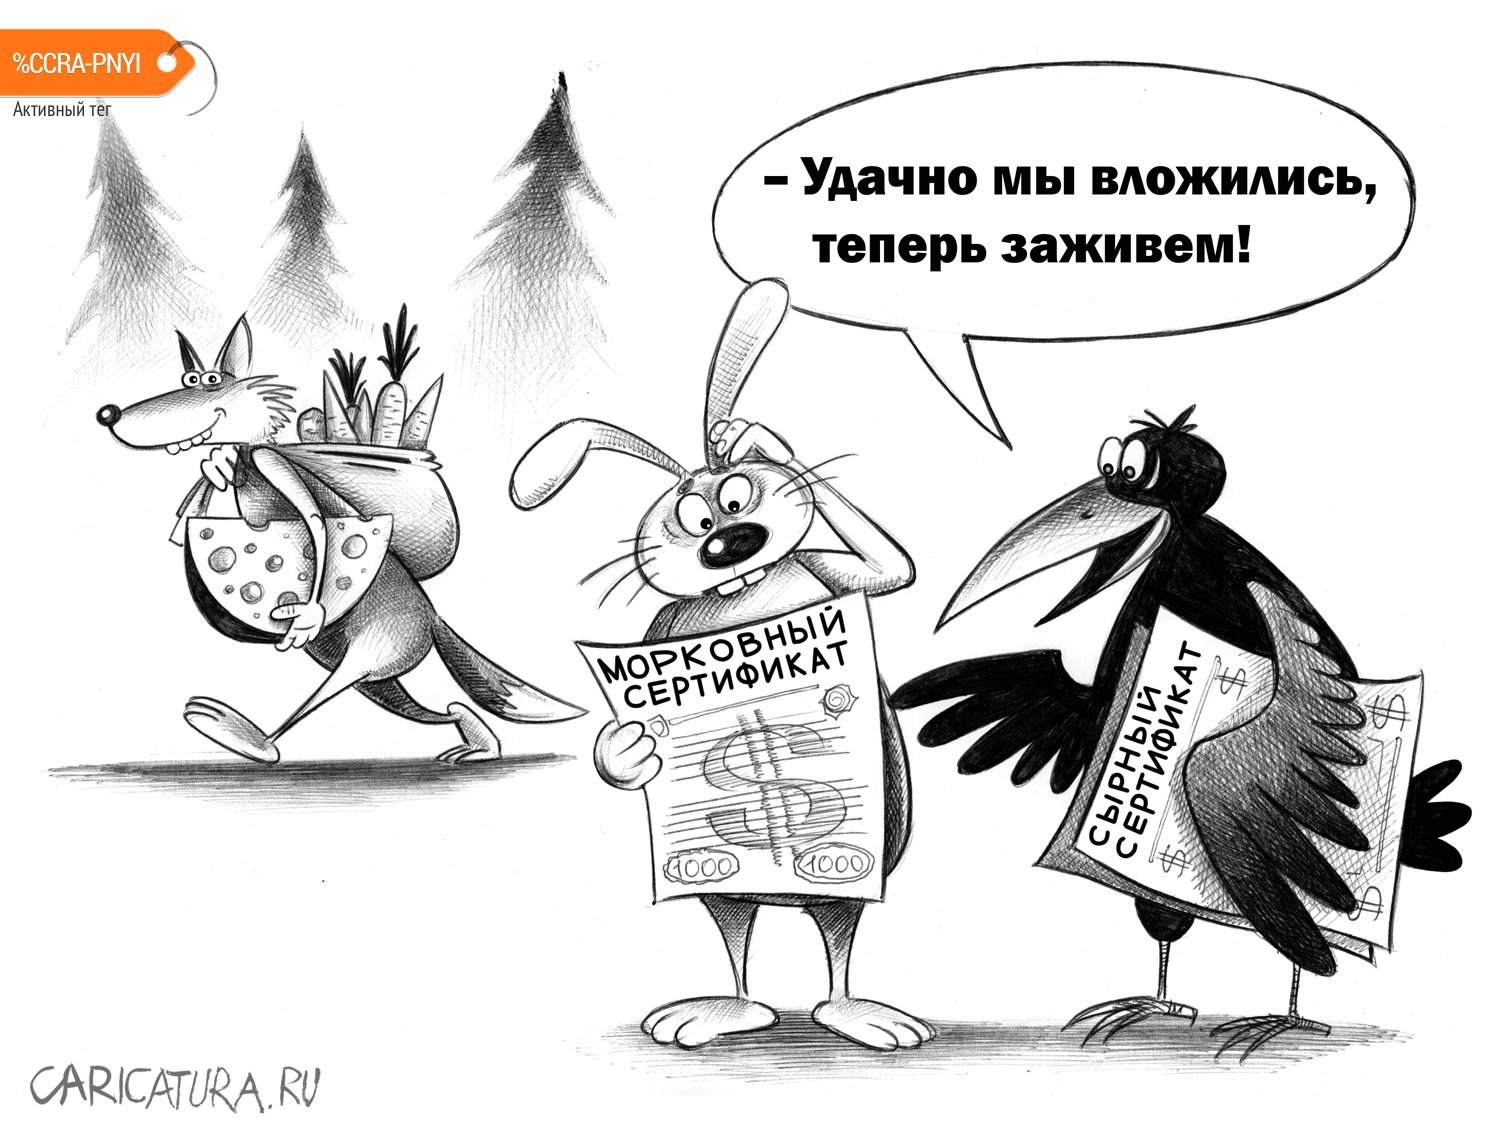 Карикатура «Вложение», Сергей Корсун. Карикатуры, комиксы, шаржи